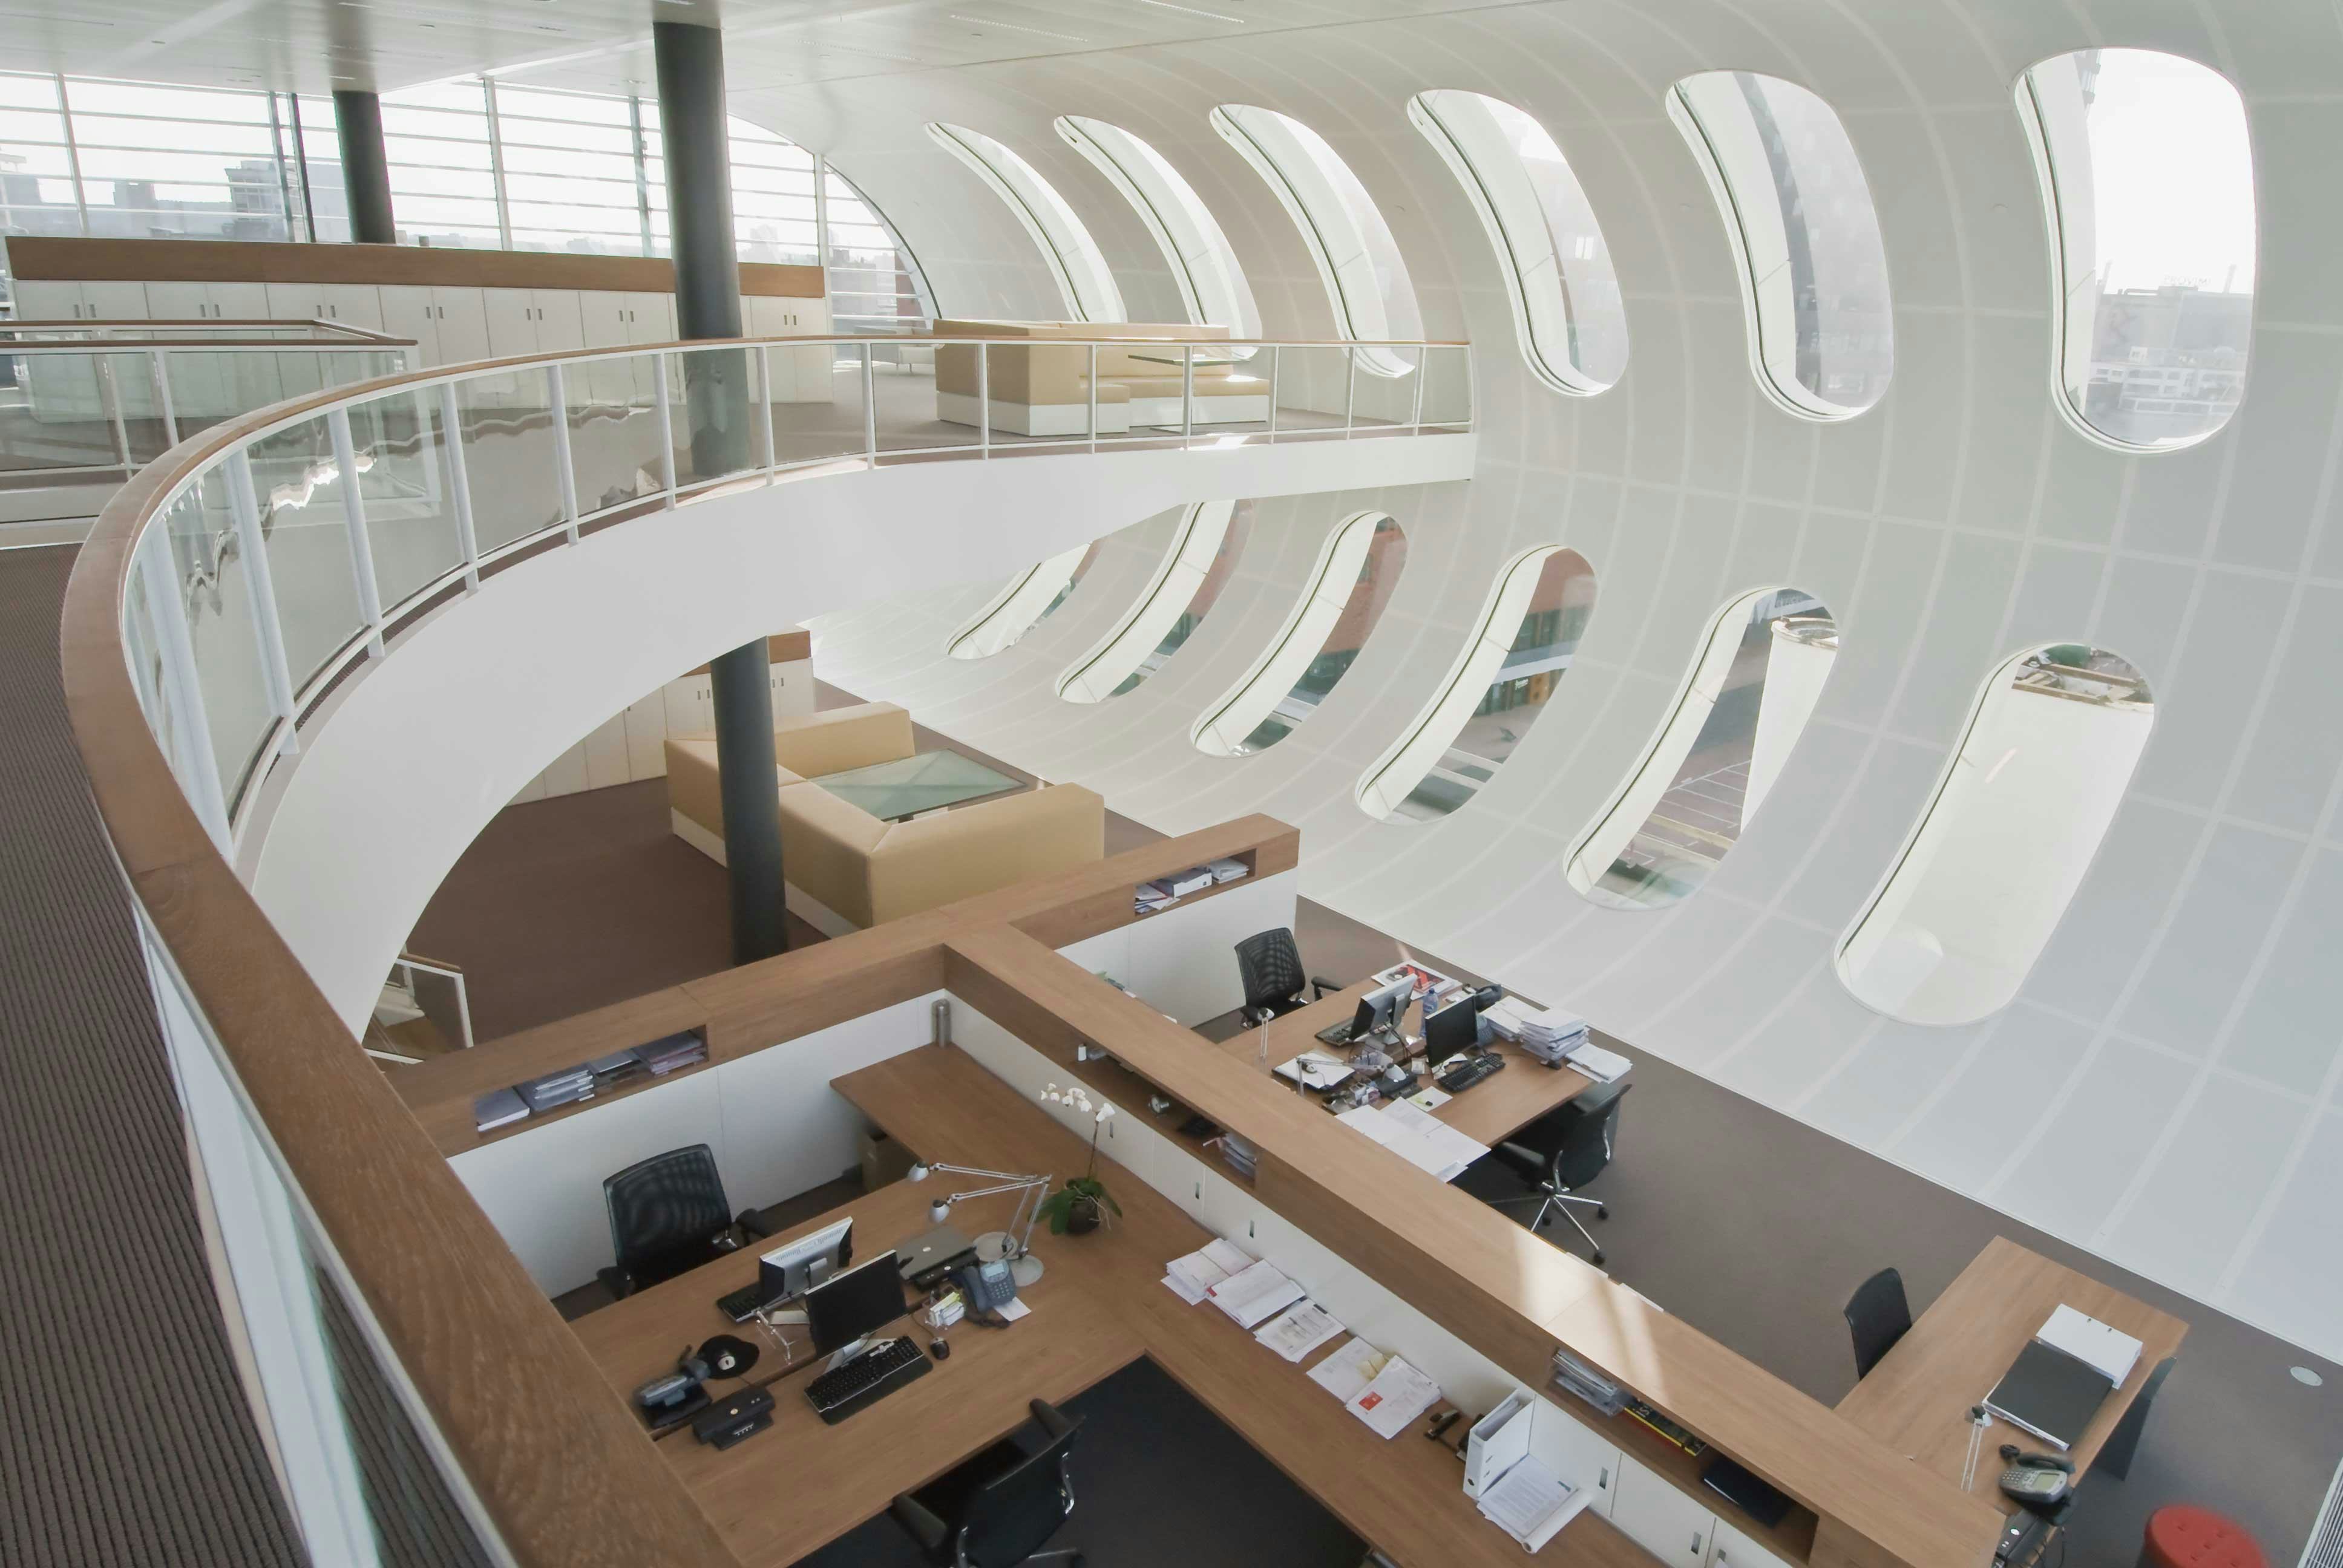 Kantoor OVG in Rotterdam door Fokkema Architecten